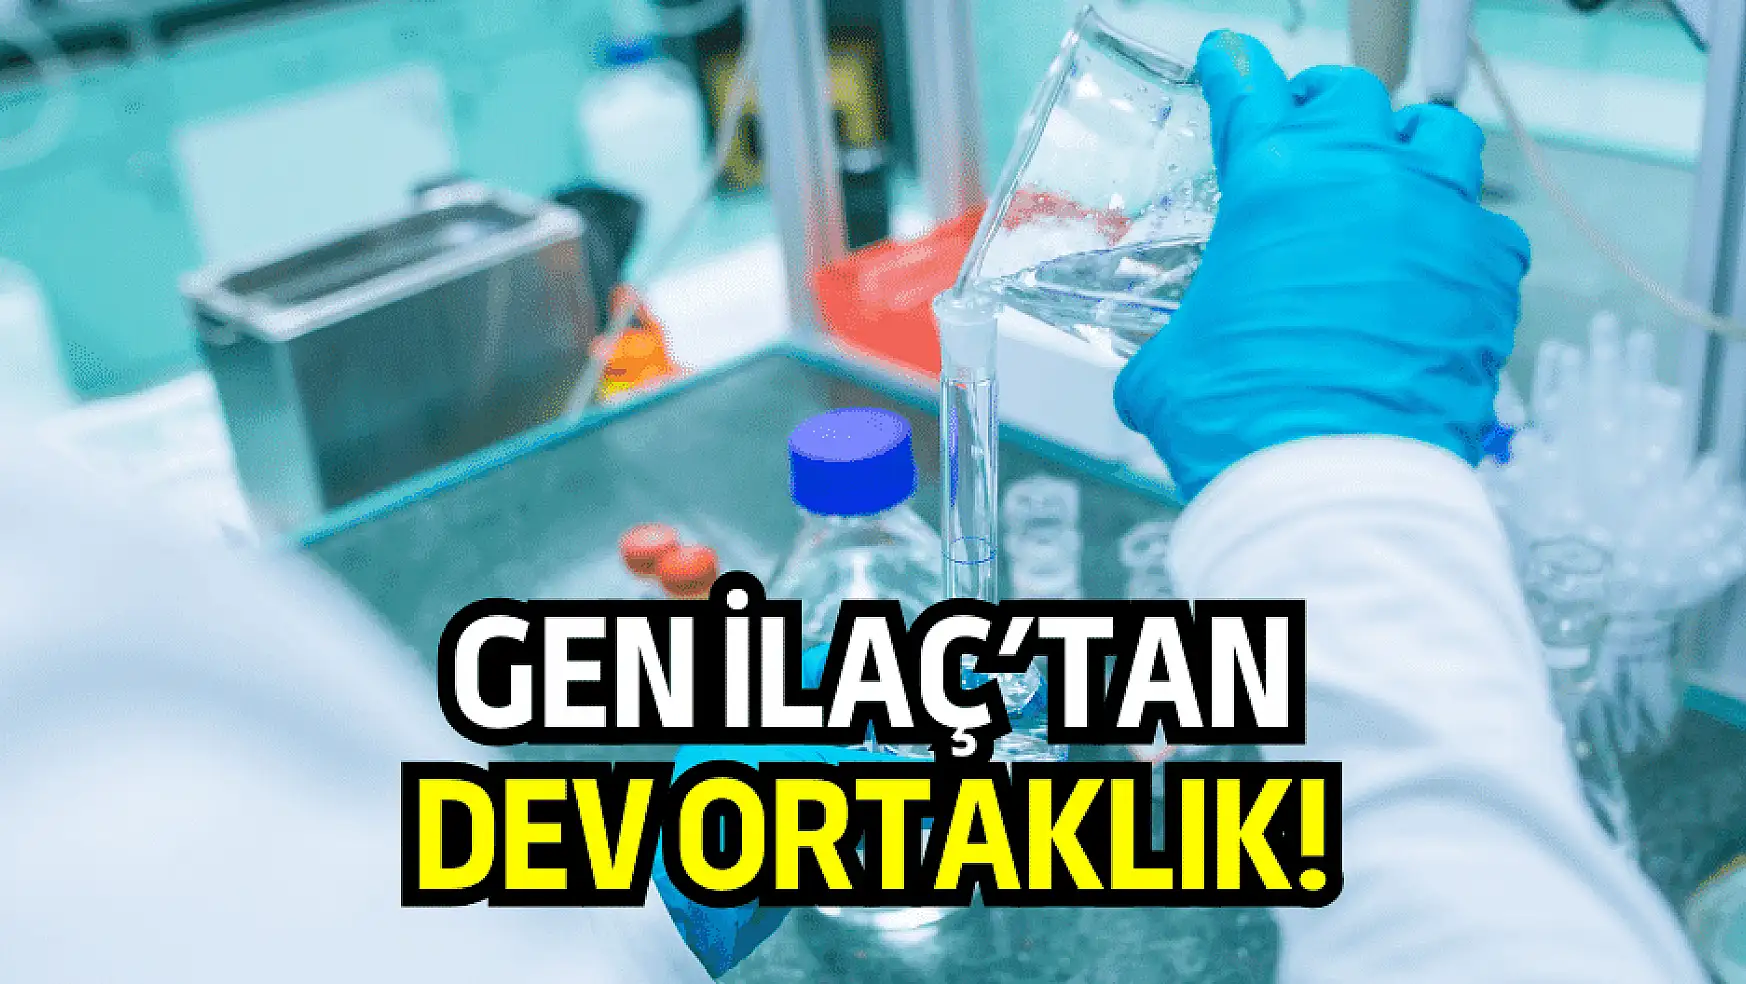 Dev ortaklık: BİST şirketi, Azerbaycan'da ilaç üretimine başlıyor!